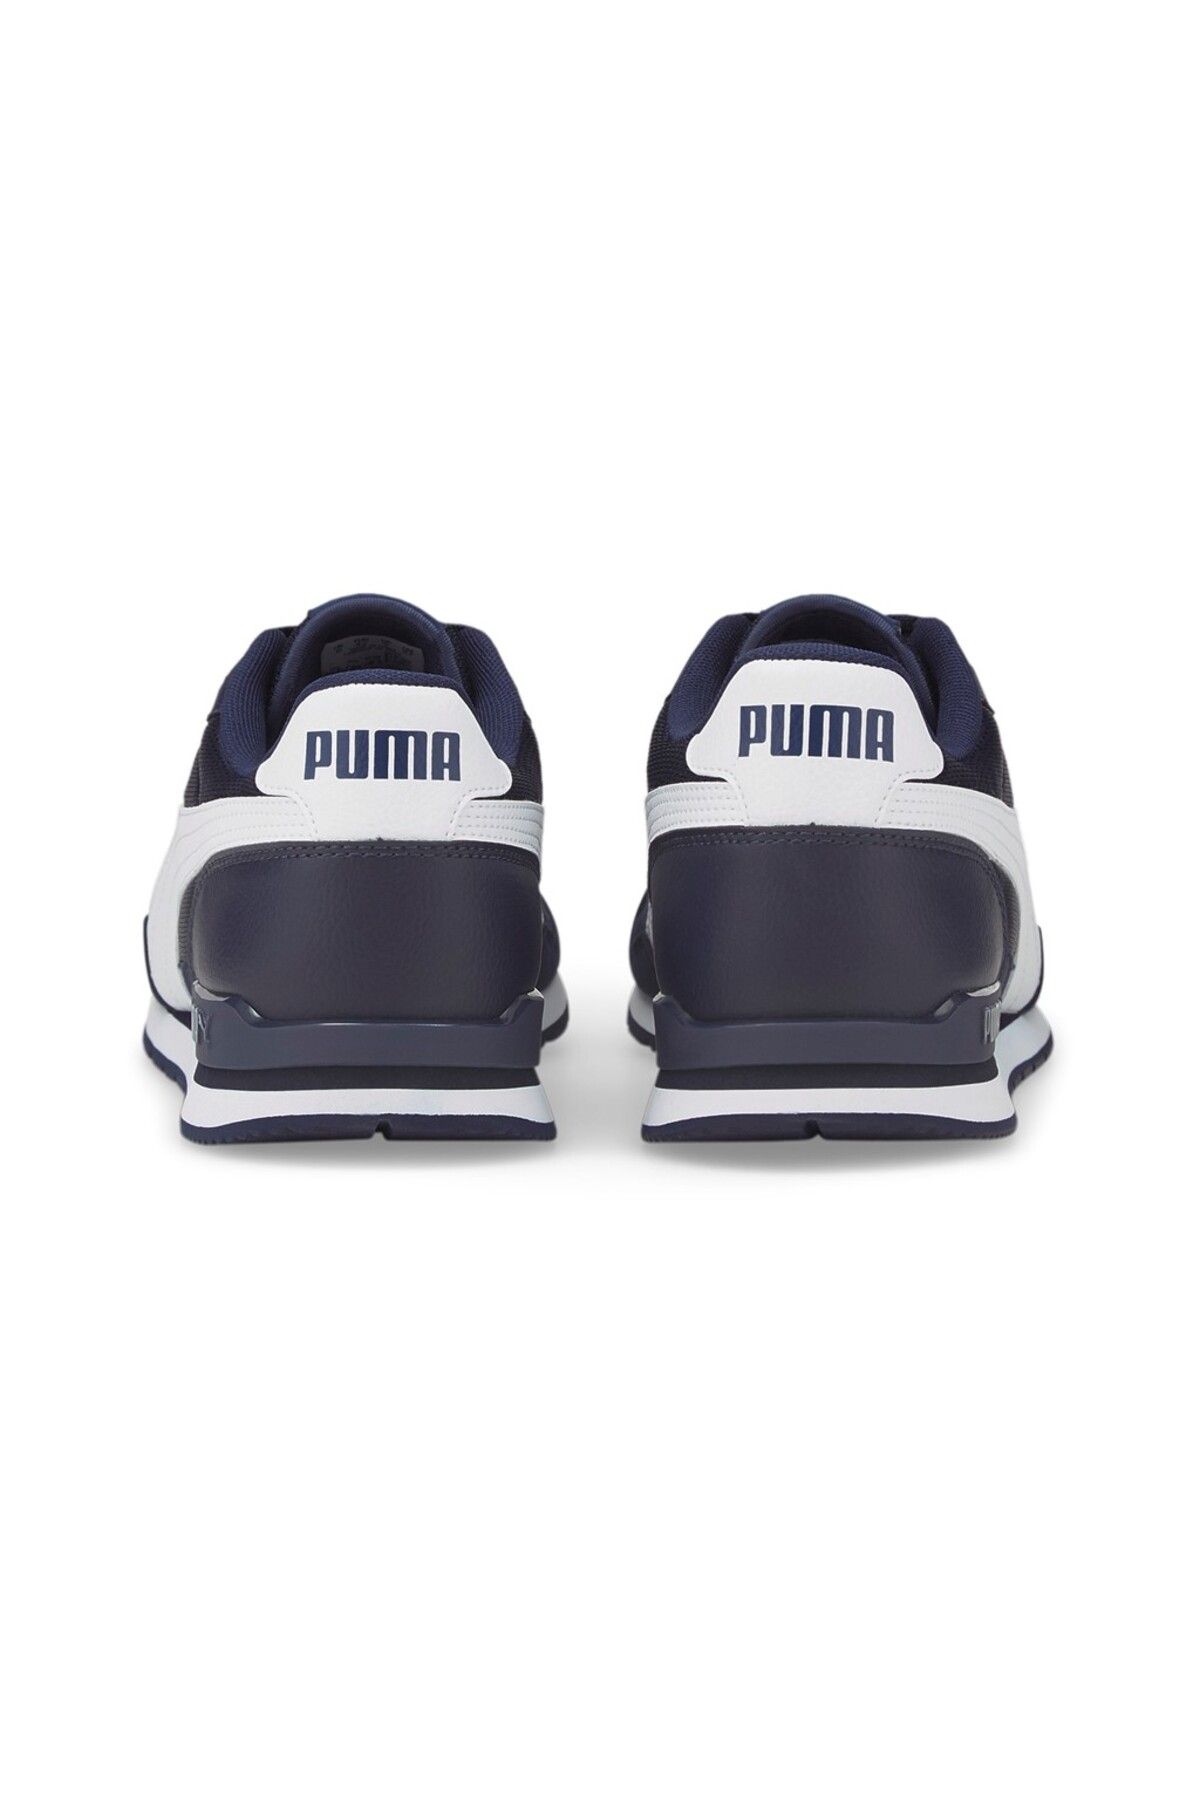 Puma Men's Shoes St Runner V3 Mesh Peacoat- White 38464002 - Trendyol